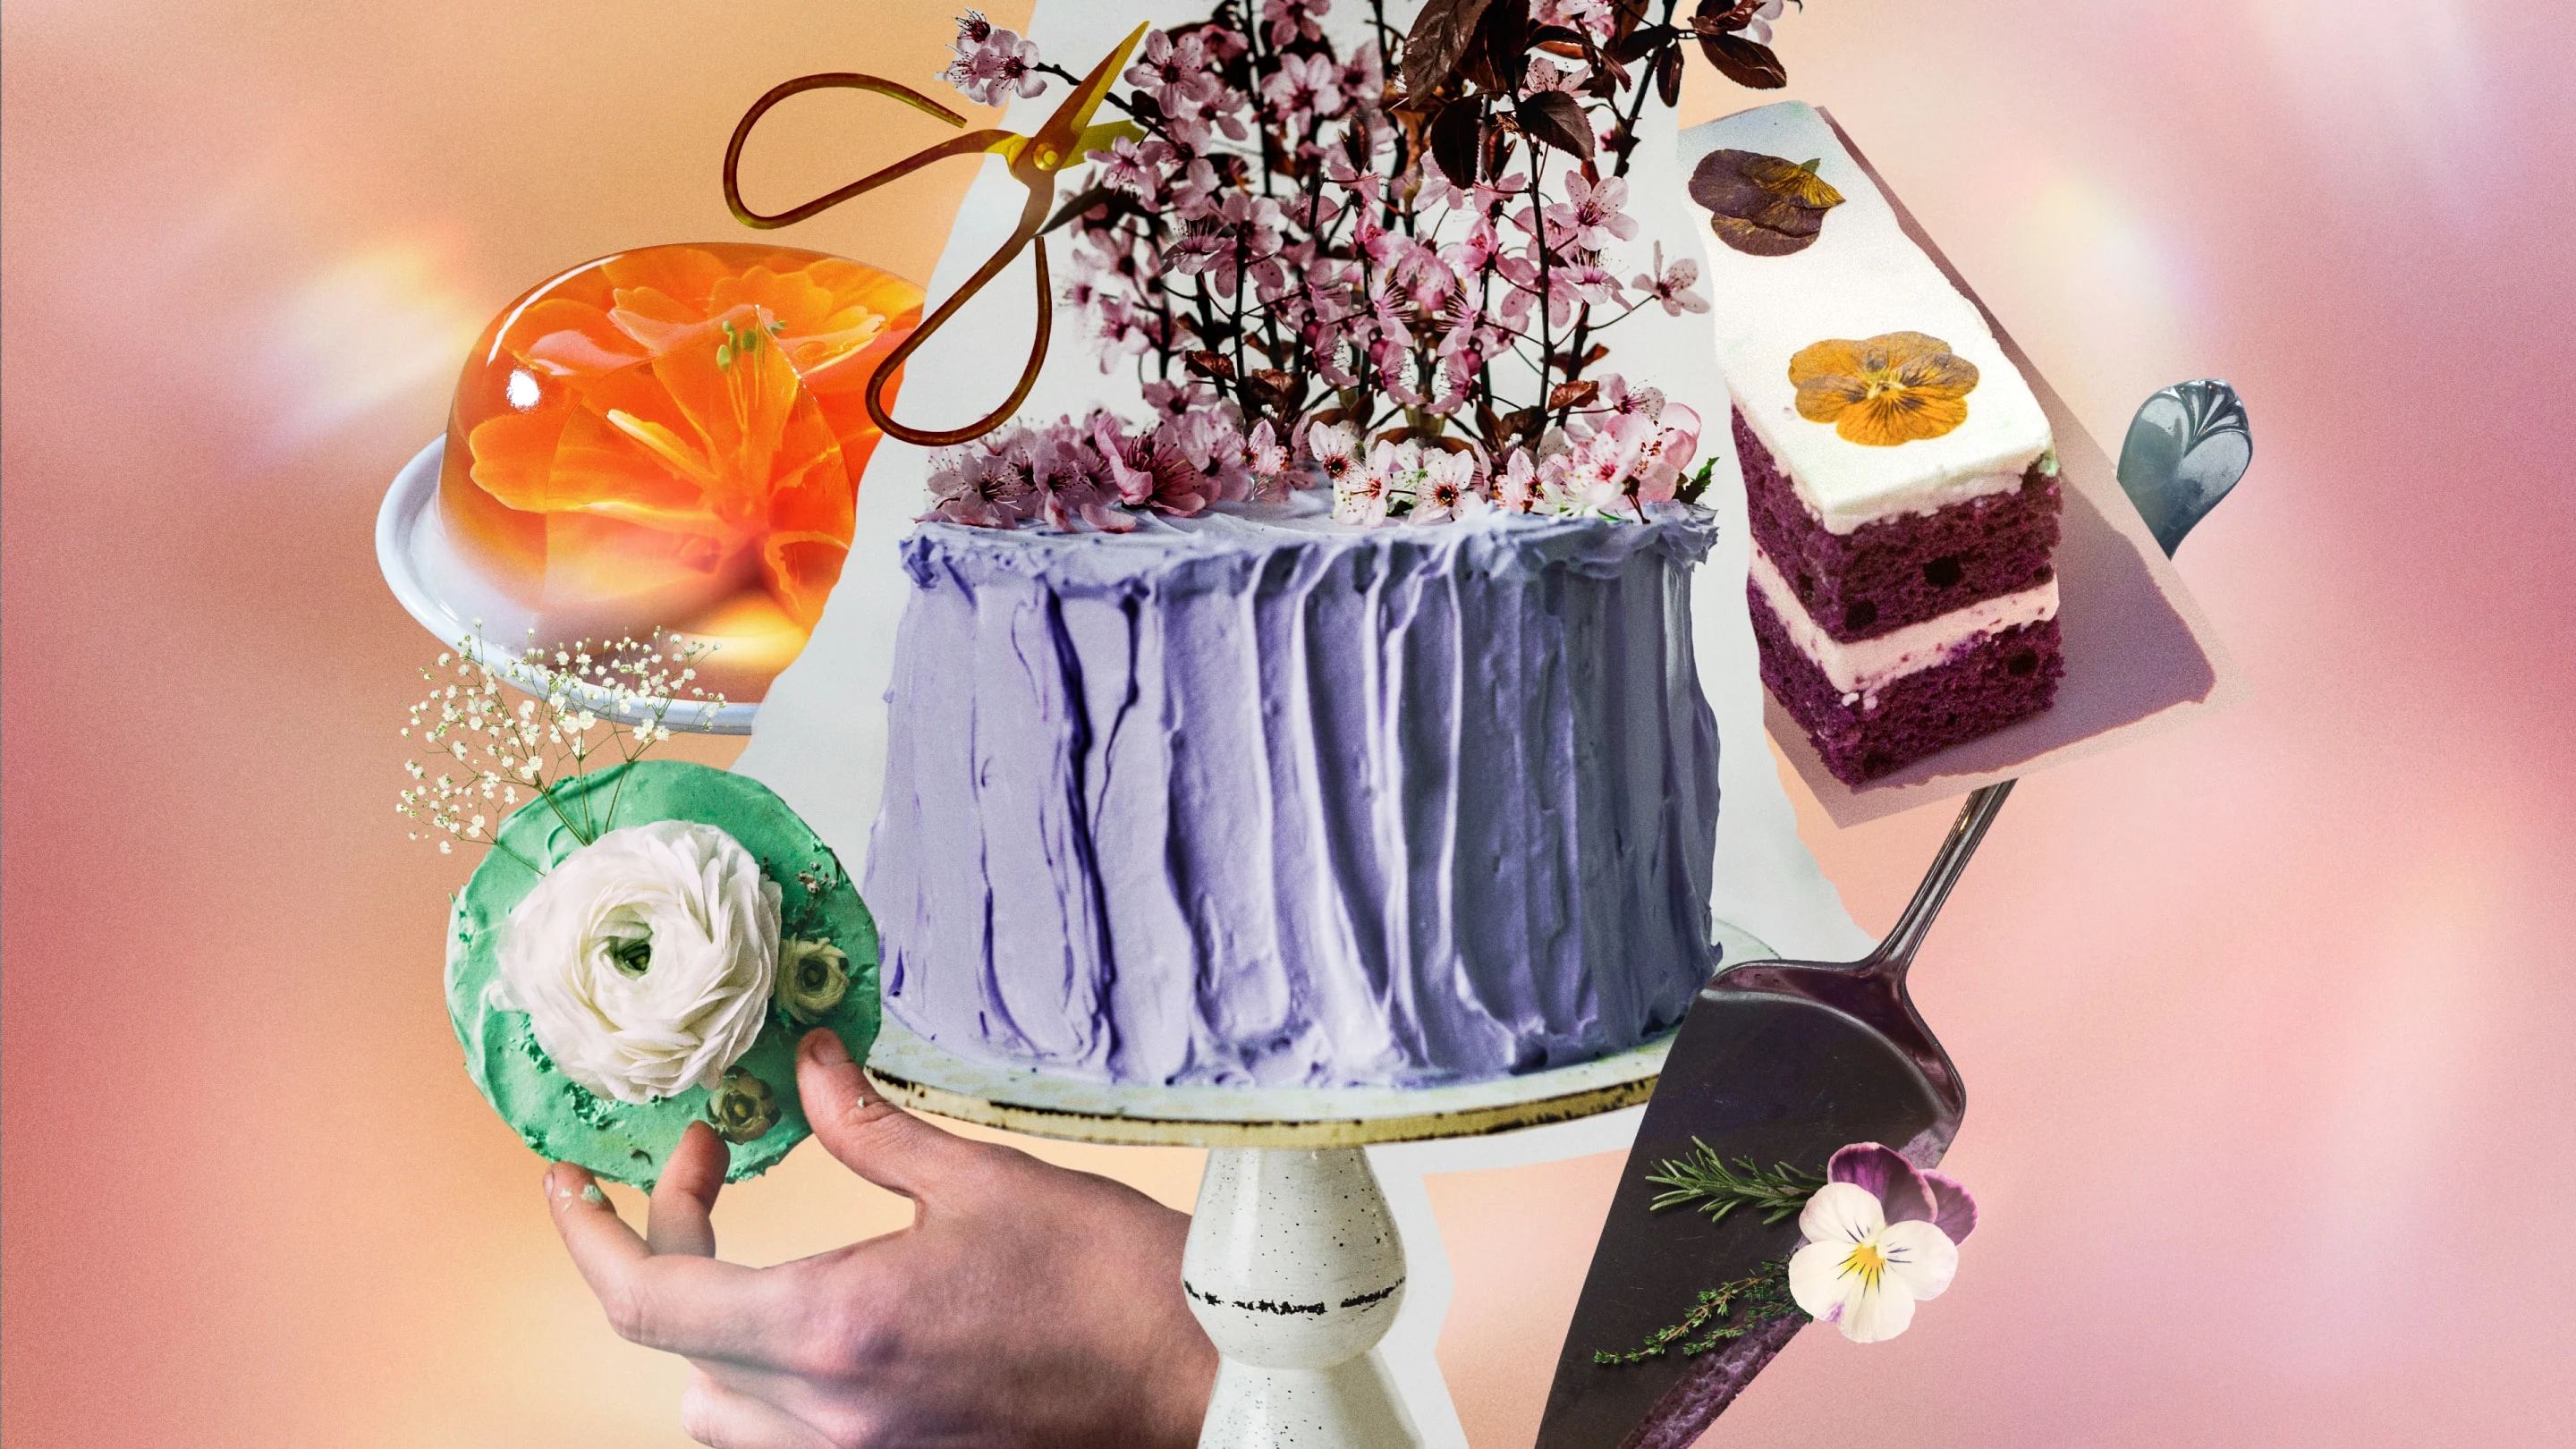 Una variedad de pasteles y rebanadas de pastel con flores silvestres adornadas en varios estilos.